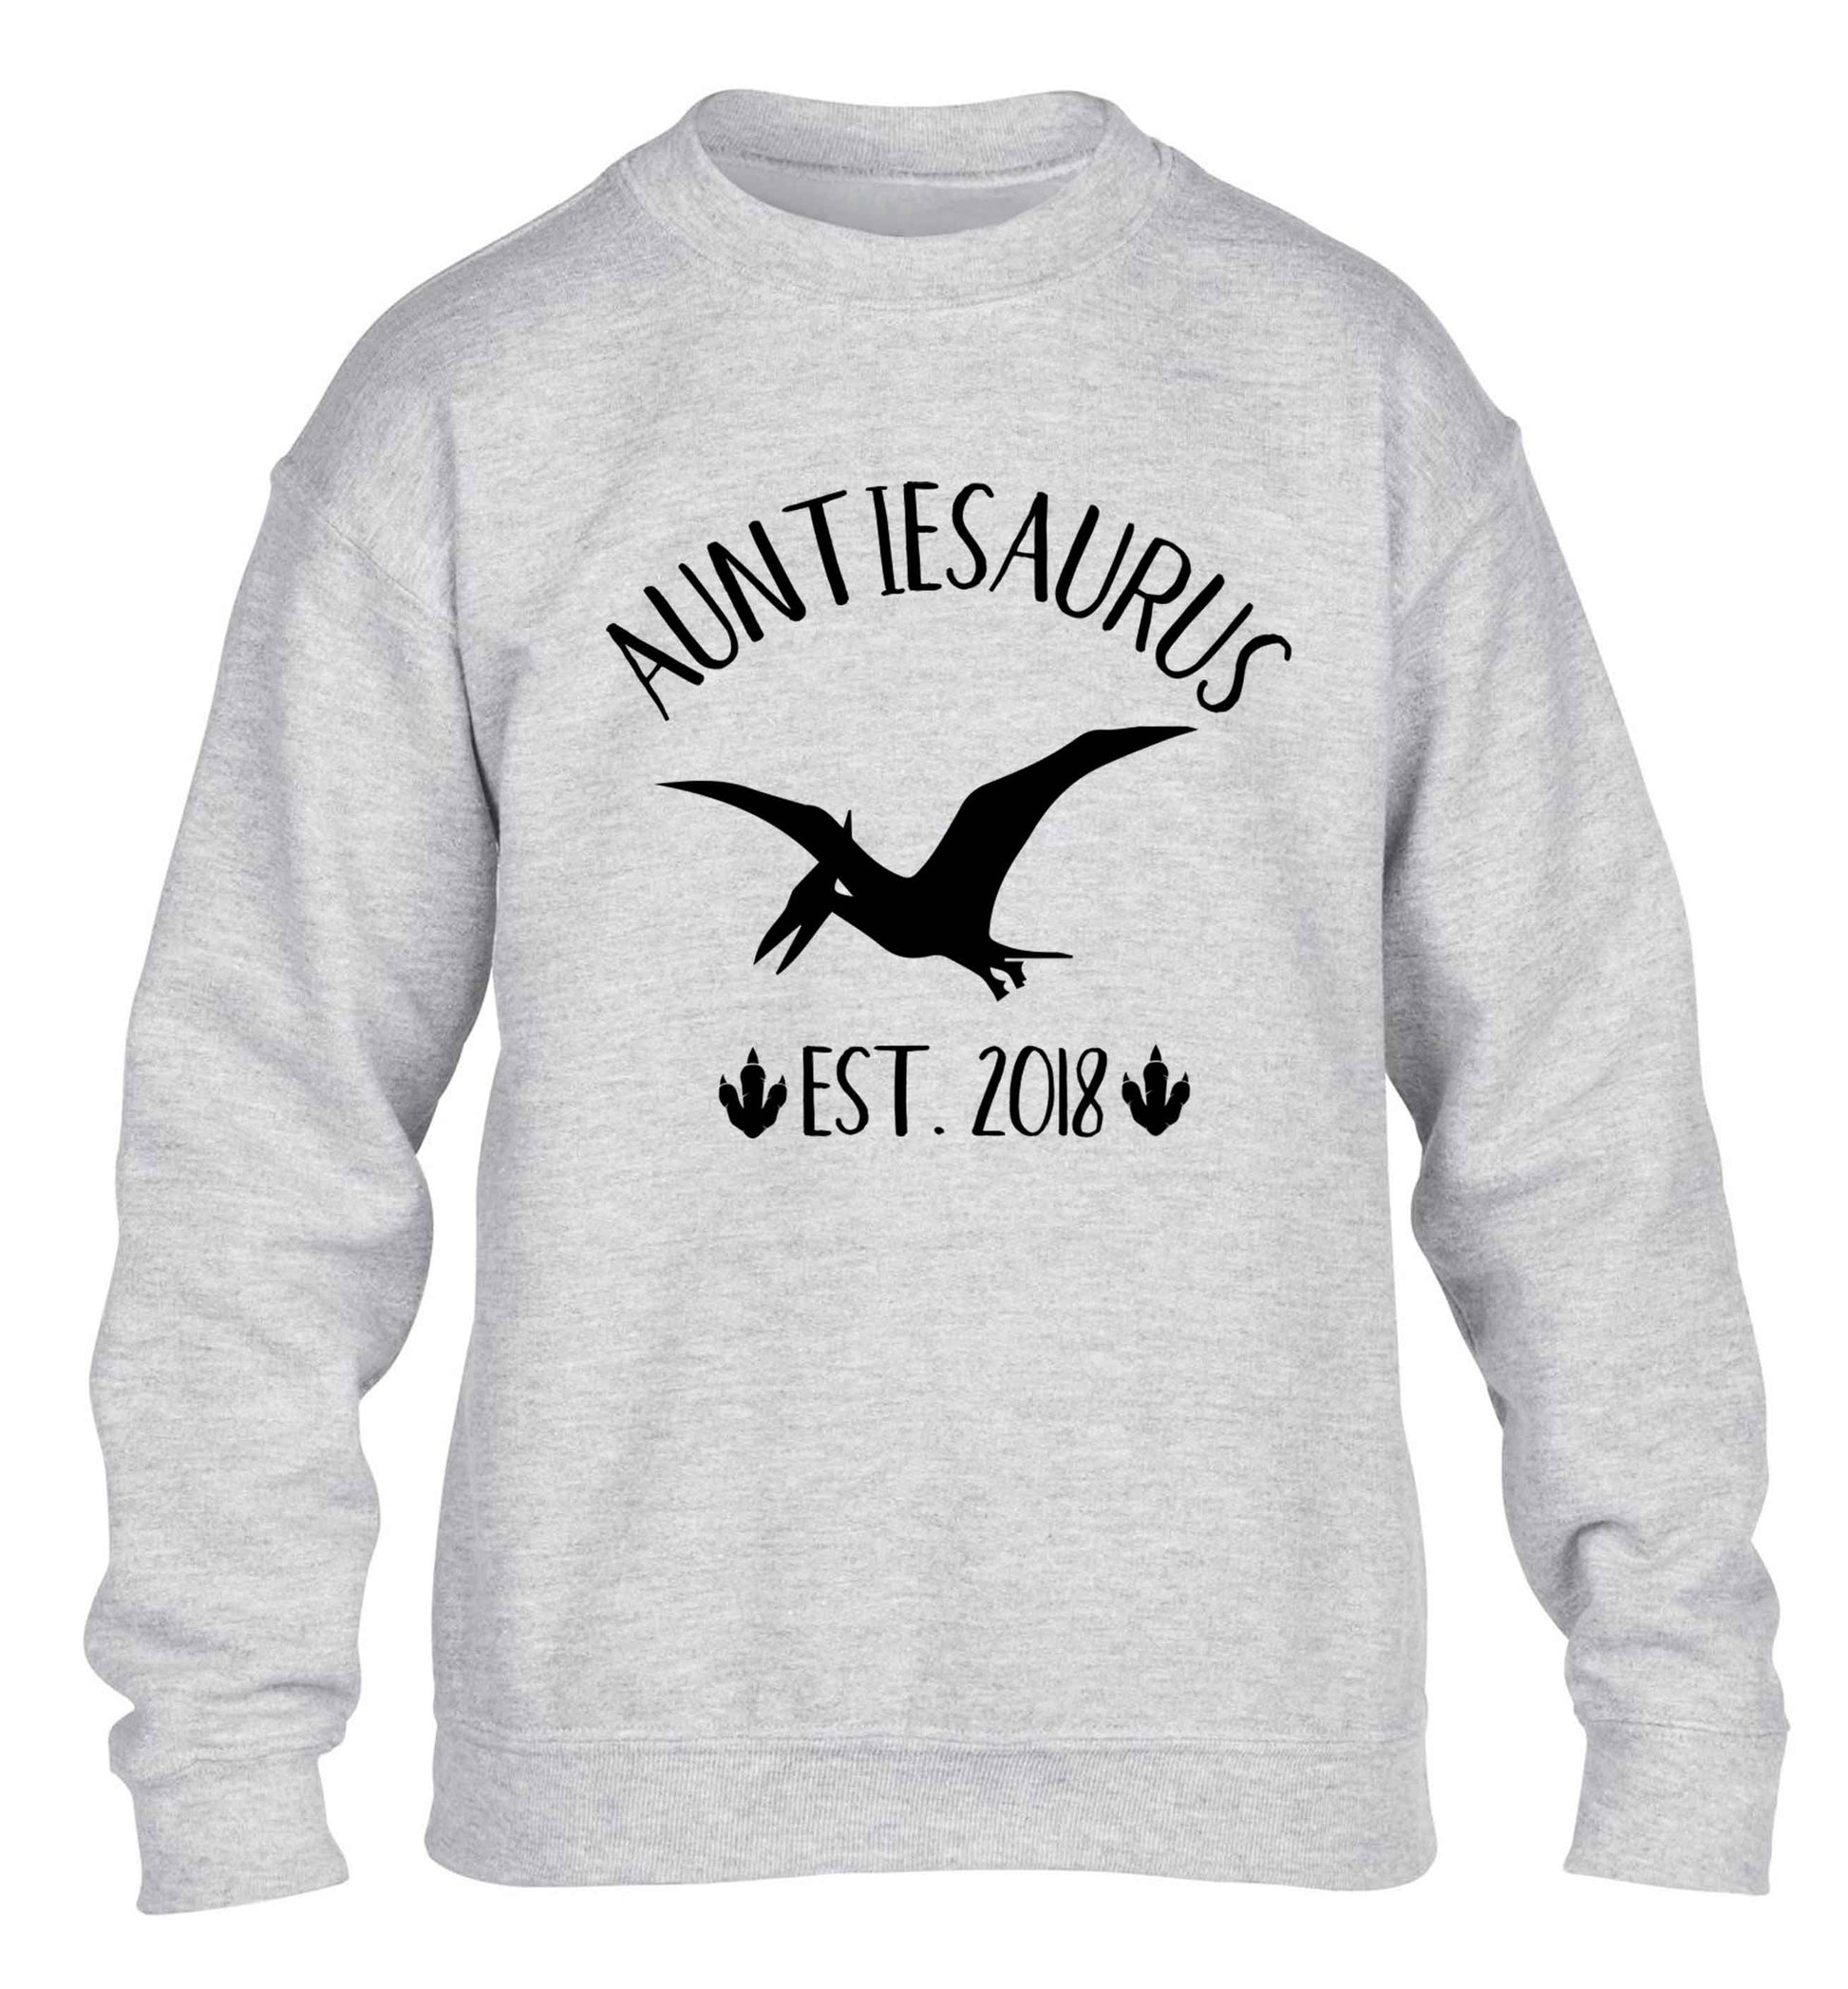 Personalised auntiesaurus since (custom date) children's grey sweater 12-13 Years